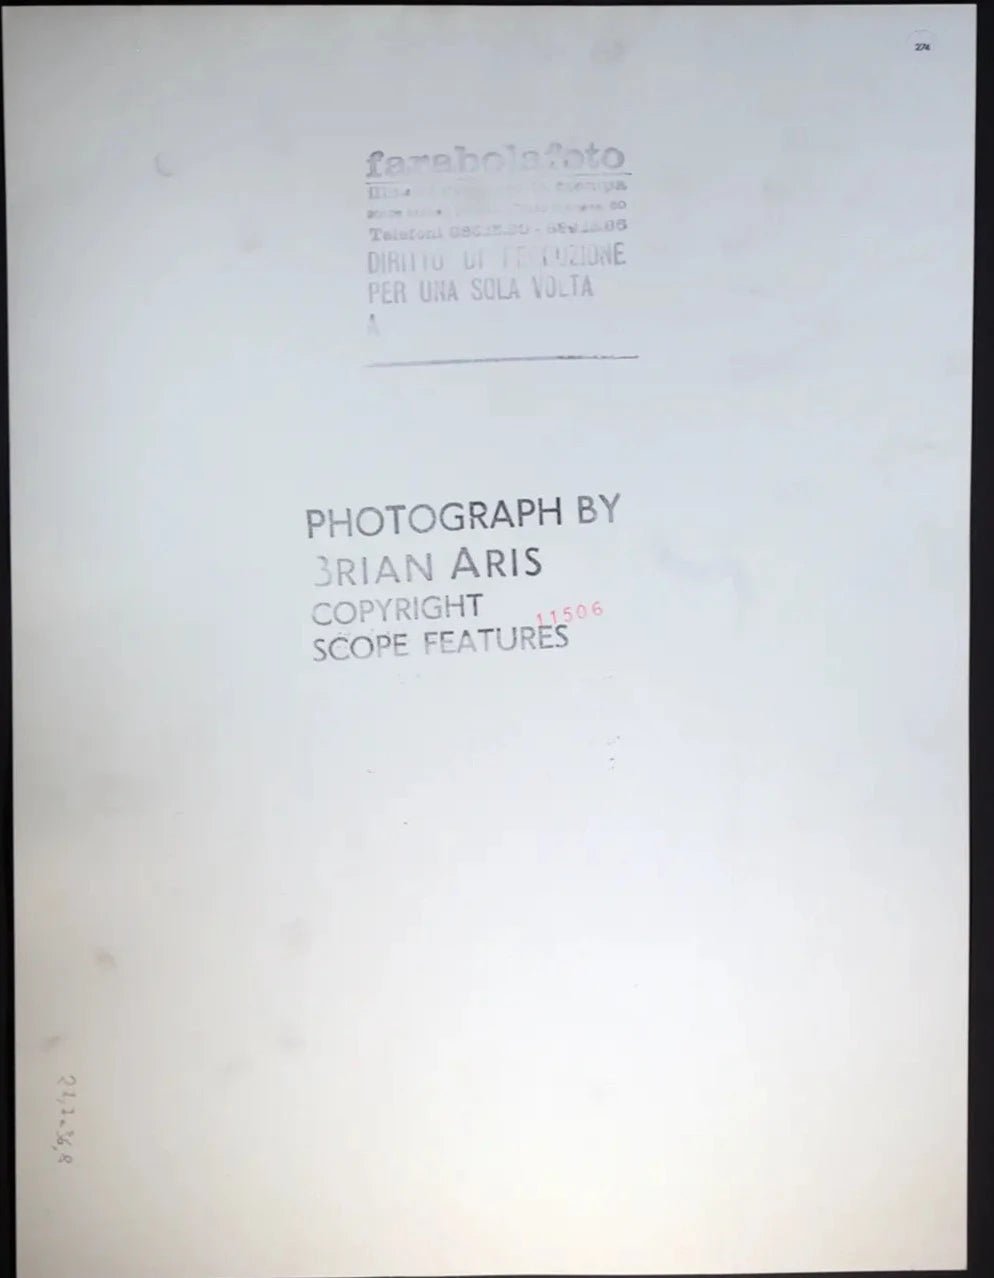 Elton John anni 70 Ft 274 - Stampa 24x37 cm - Farabola Stampa ai sali d'argento